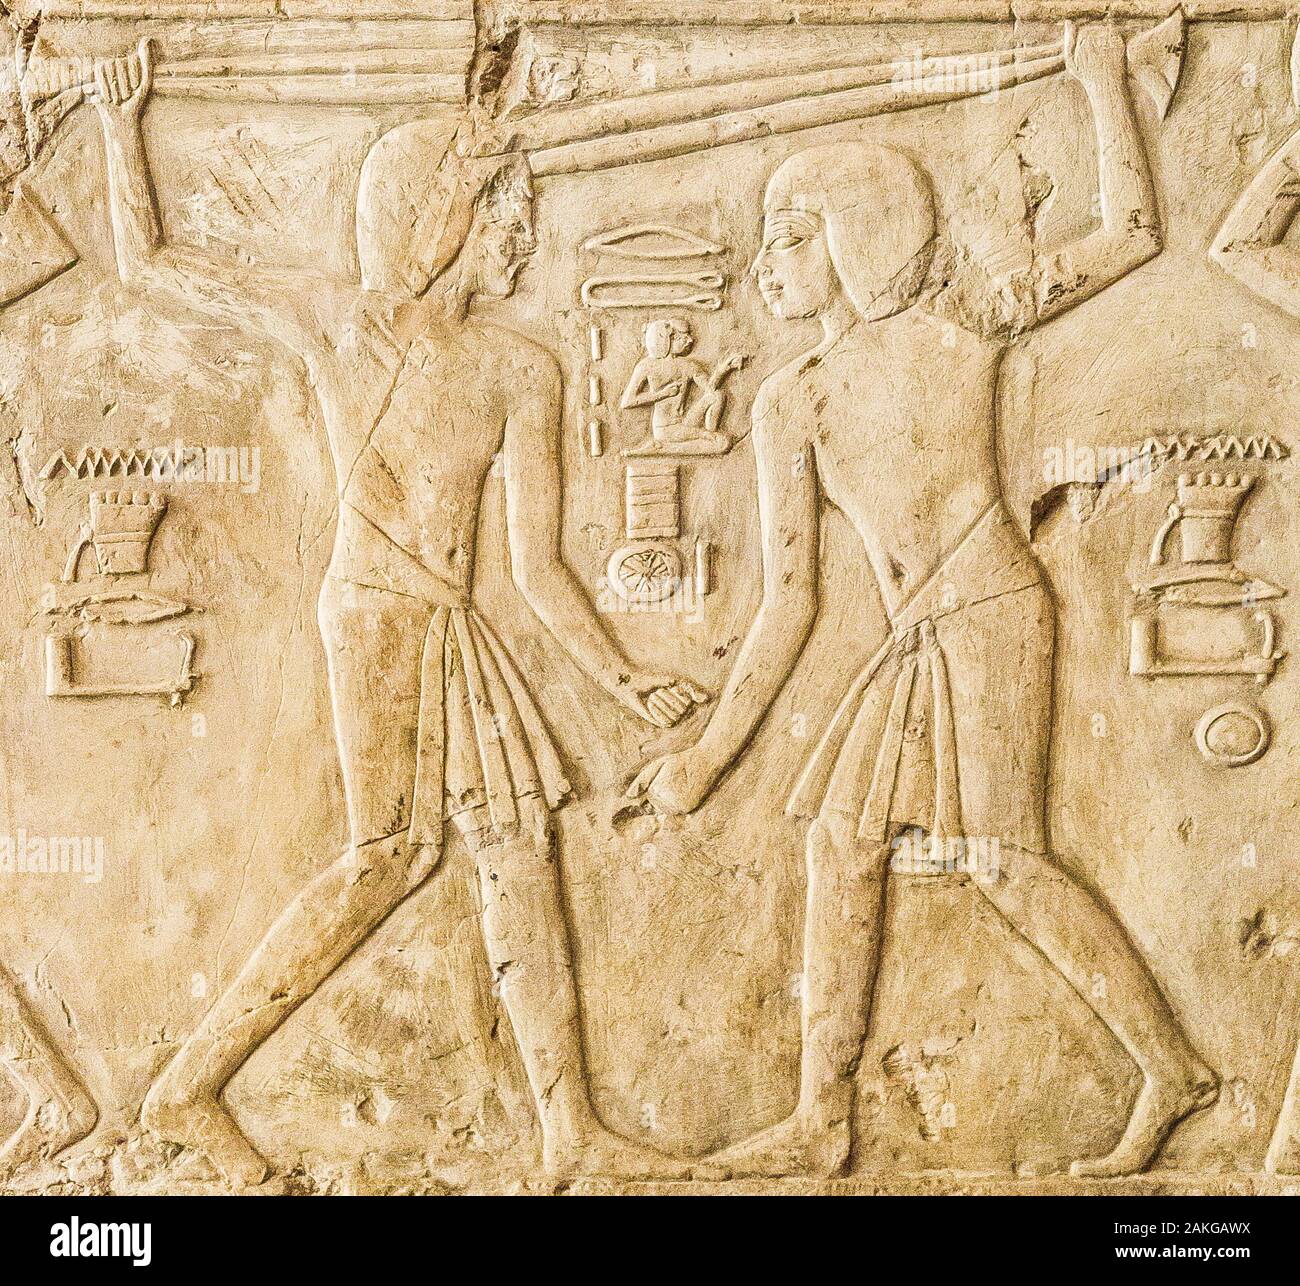 Thèbes en Egypte, Assassif (partie de la vallée des Nobles), tombe de Kheruef. Dans le contexte du jubilé du roi, cette lutte est-elle réelle ou fausse ? Banque D'Images